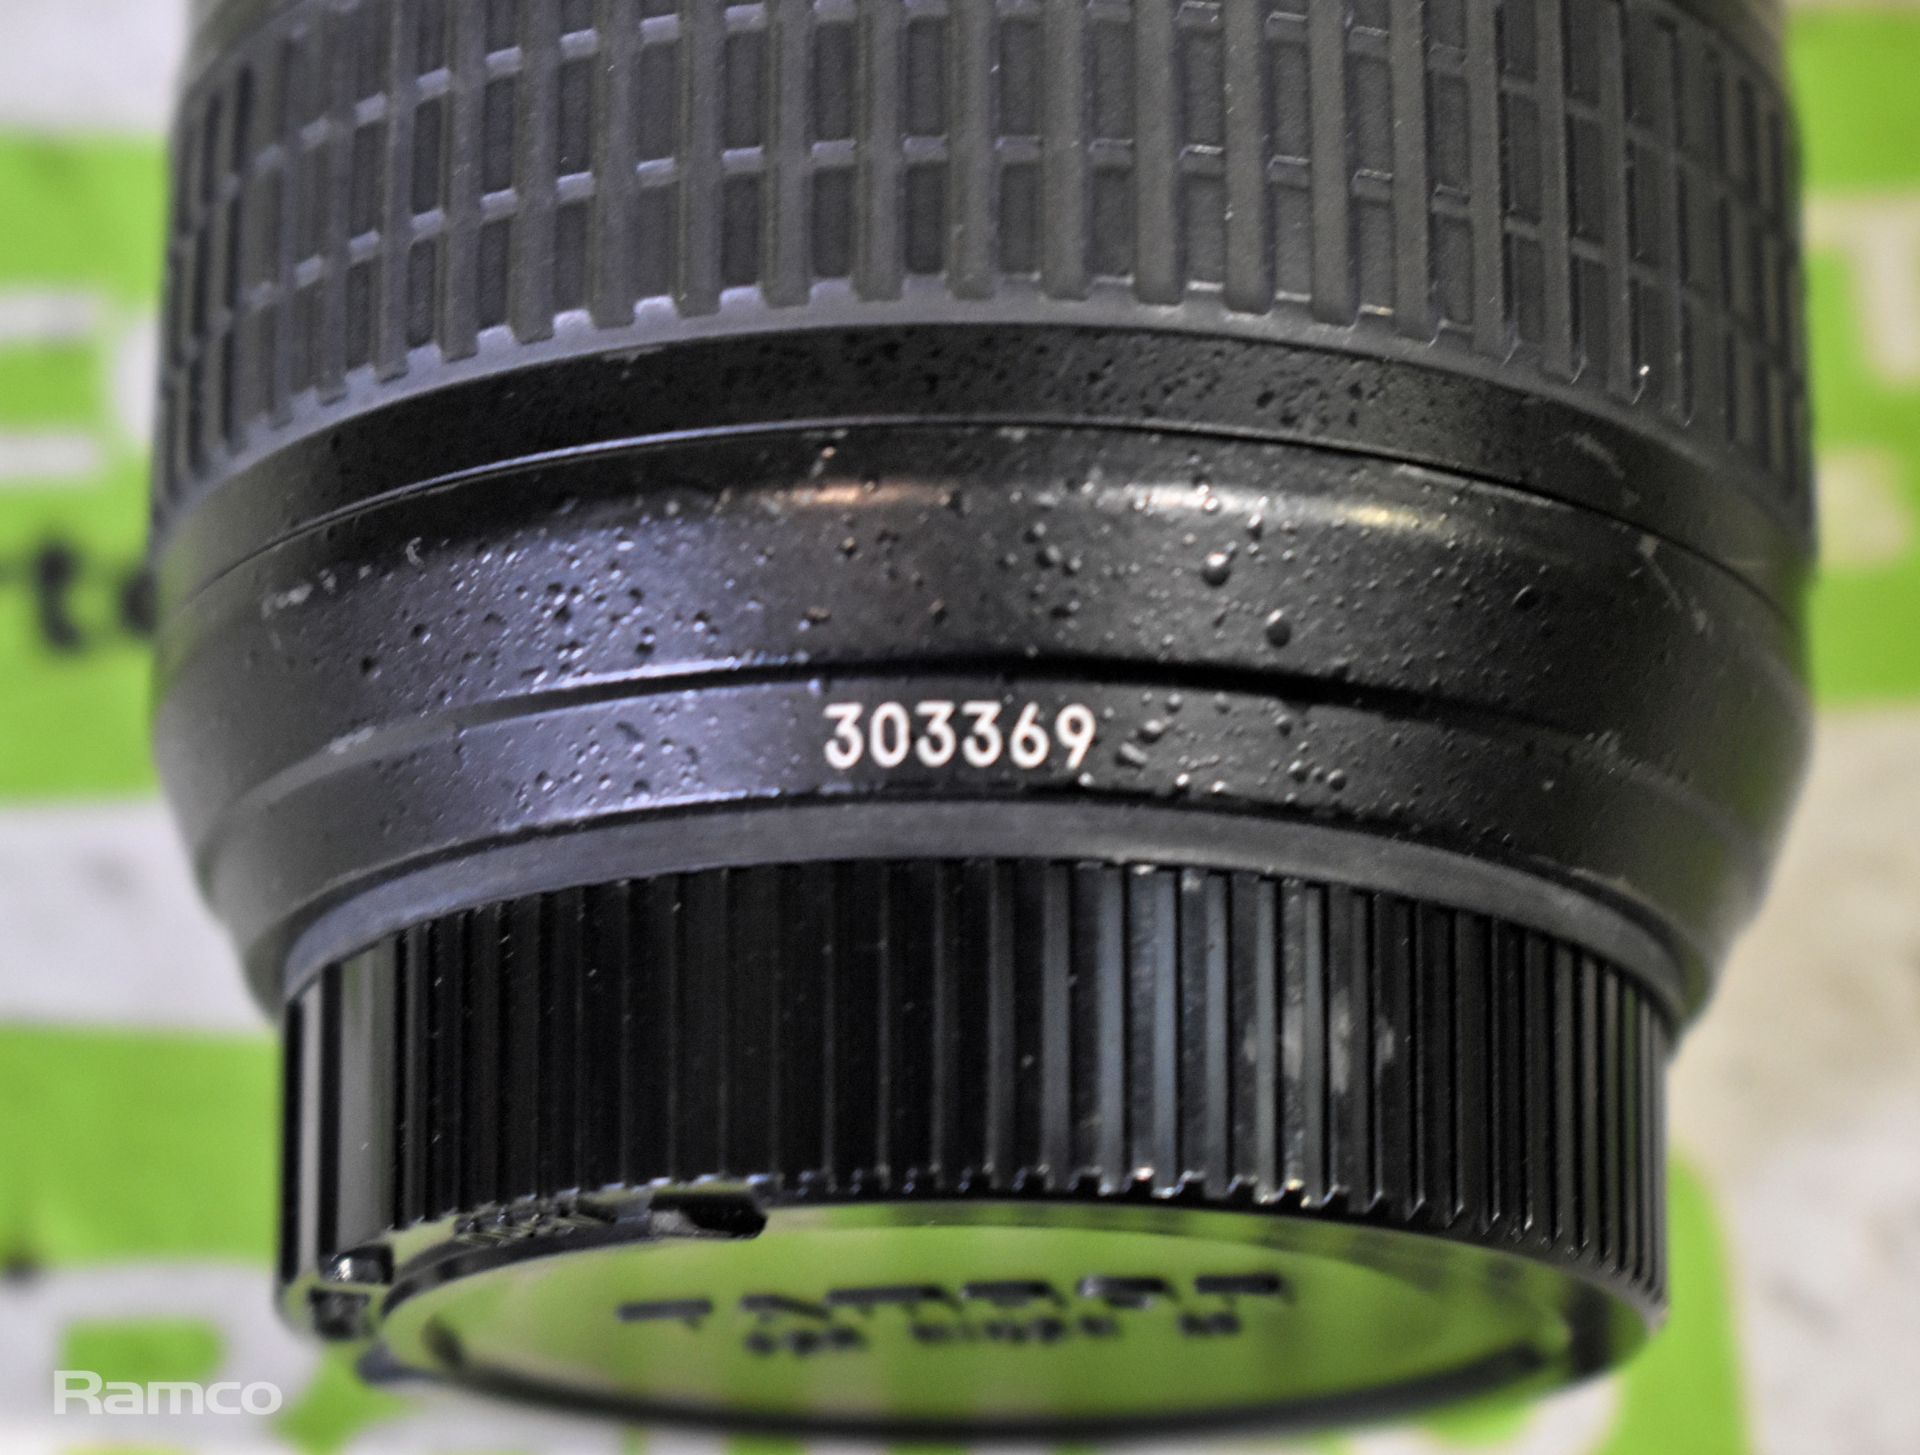 Nikon AF-S NIKKOR 14-24mm lens in case - Image 7 of 7